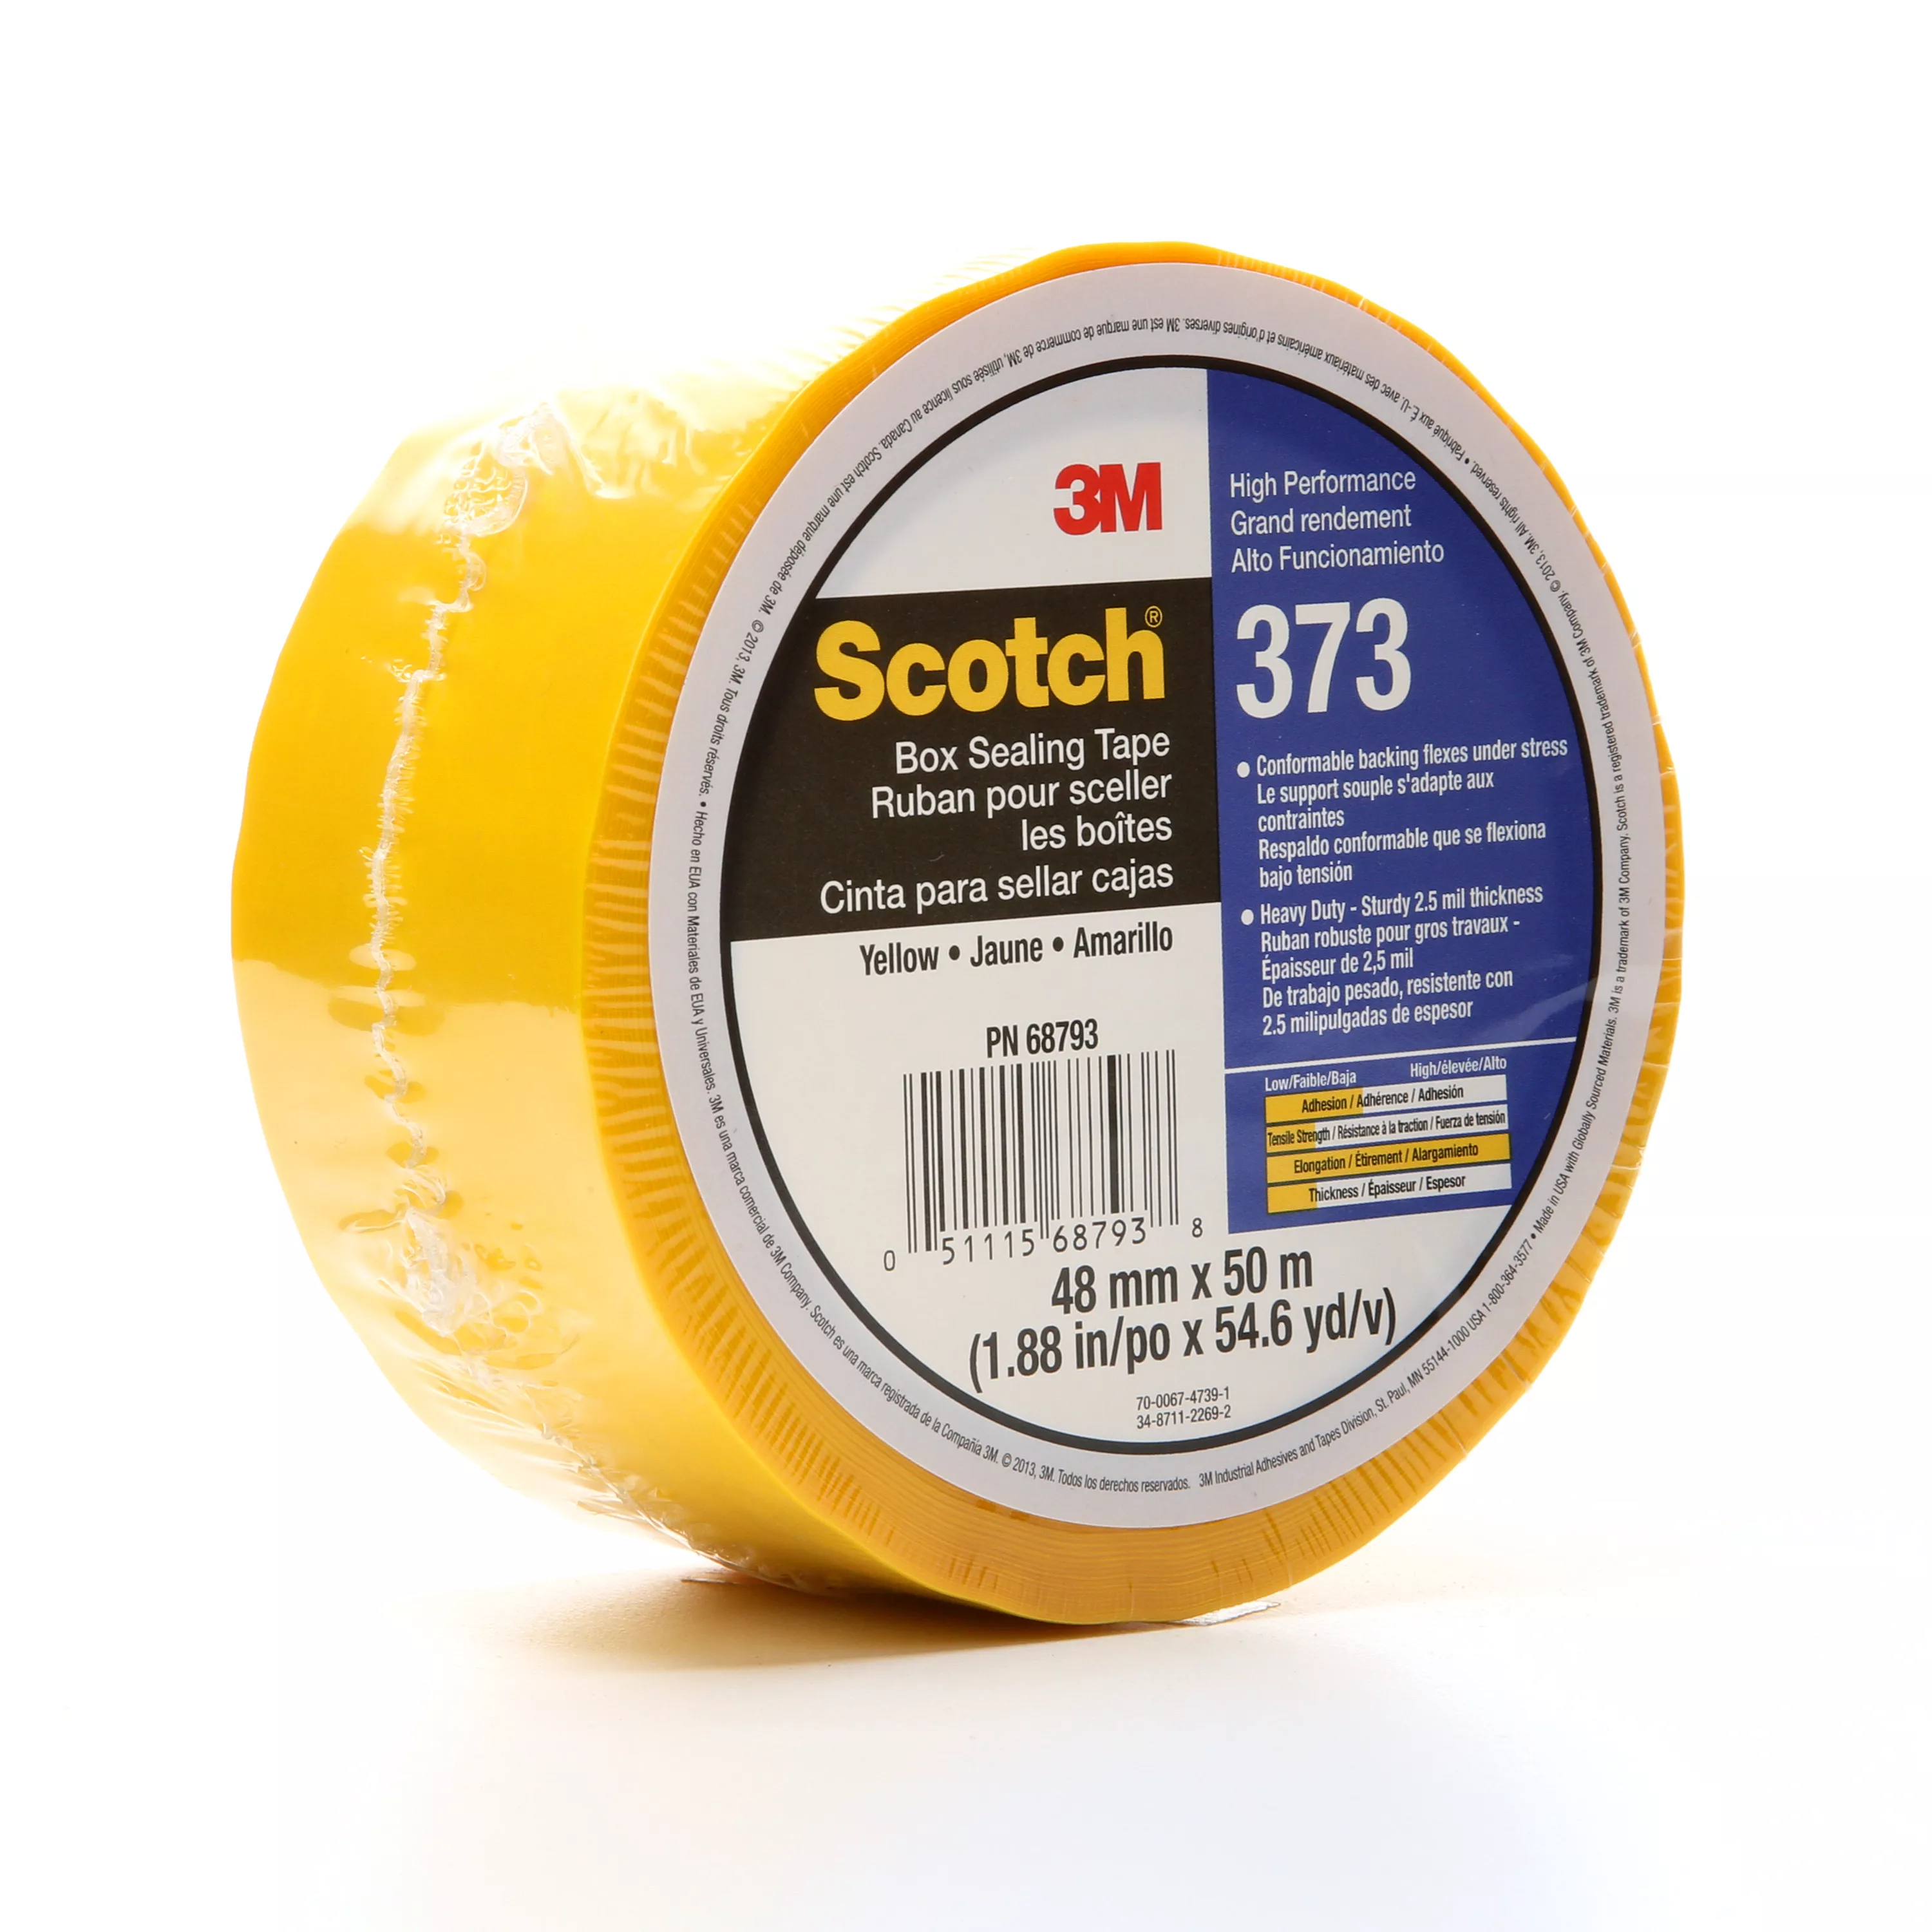 SKU 7010374969 | Scotch® Box Sealing Tape 373